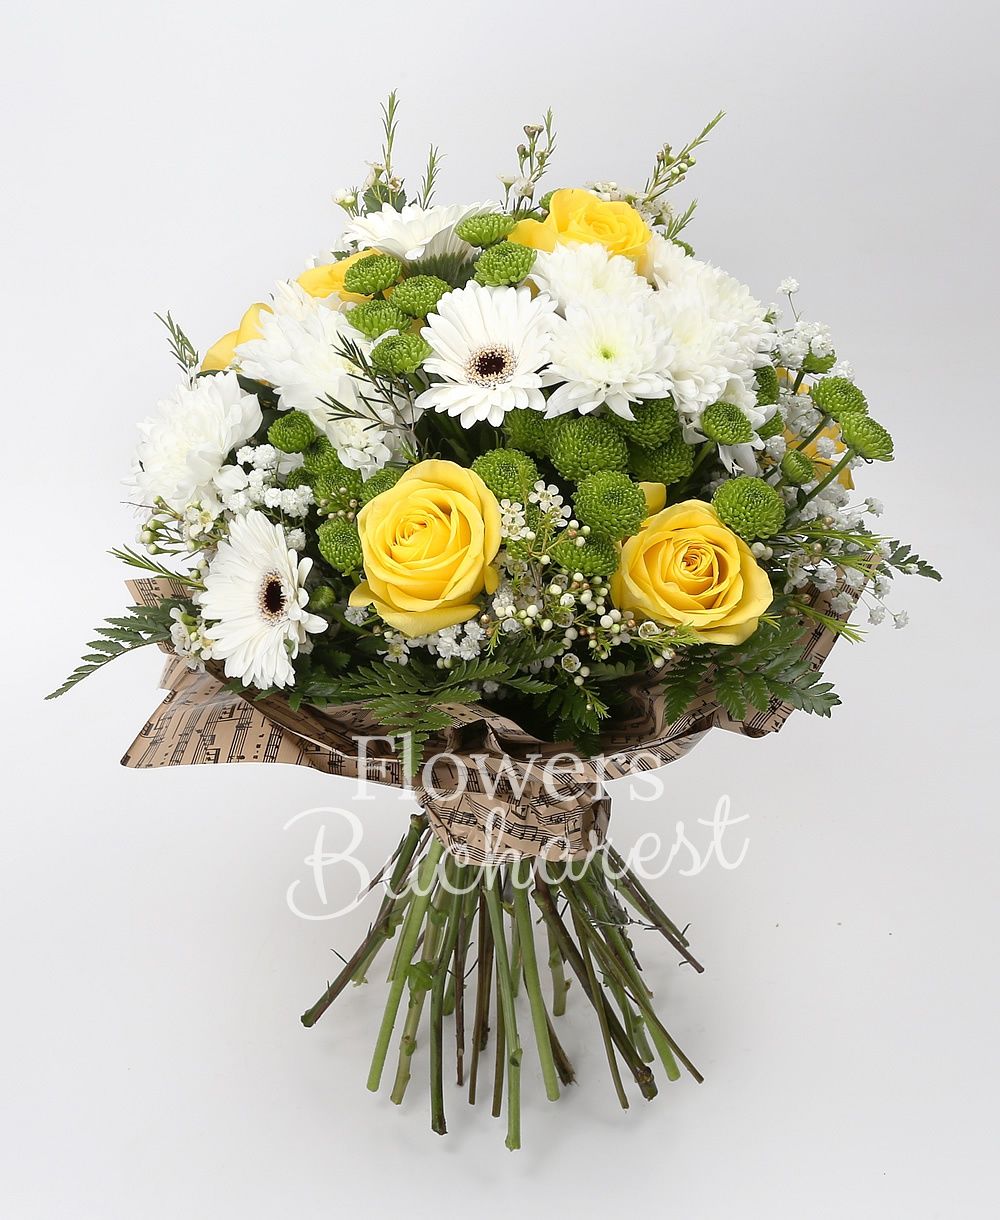 7 yellow roses, 4 white chrysanthemums, 7 white gerberas, 5 green santini, greenery